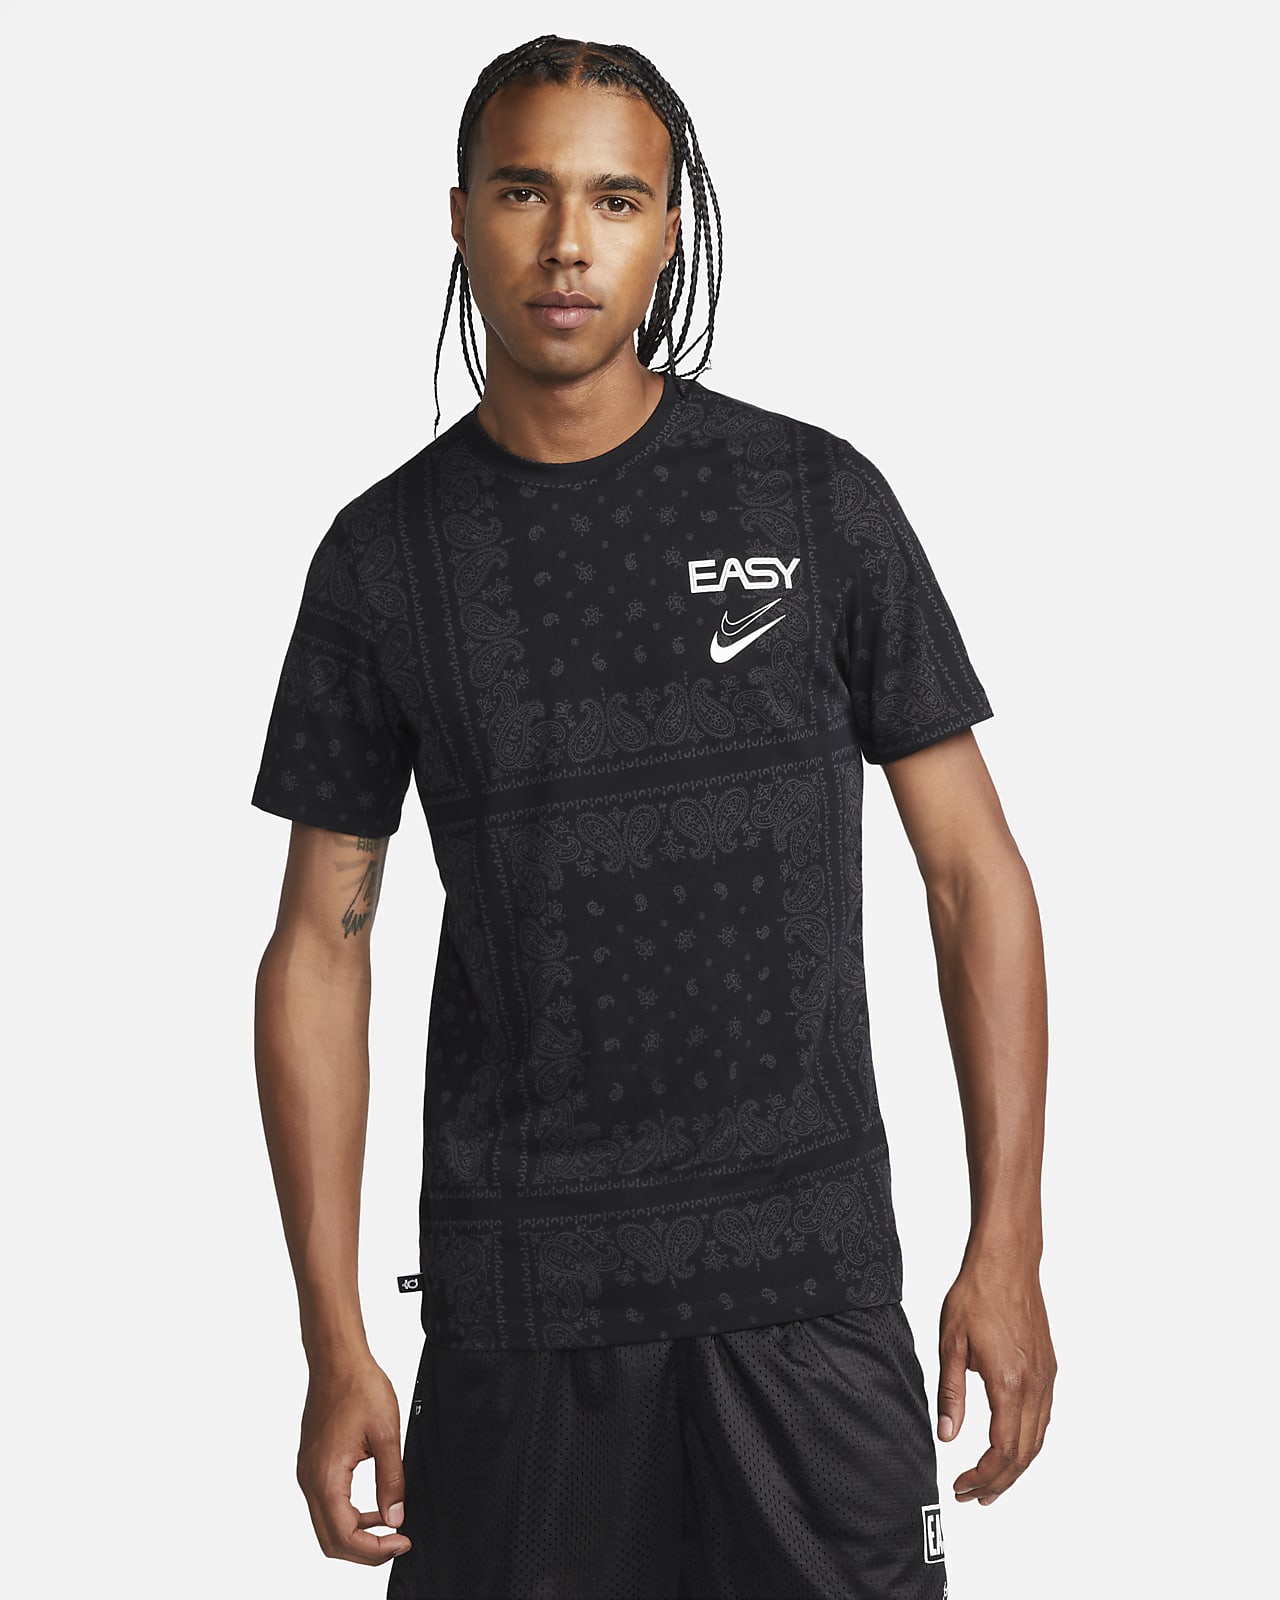 KD Nike Dri-FIT 男款籃球 T 恤